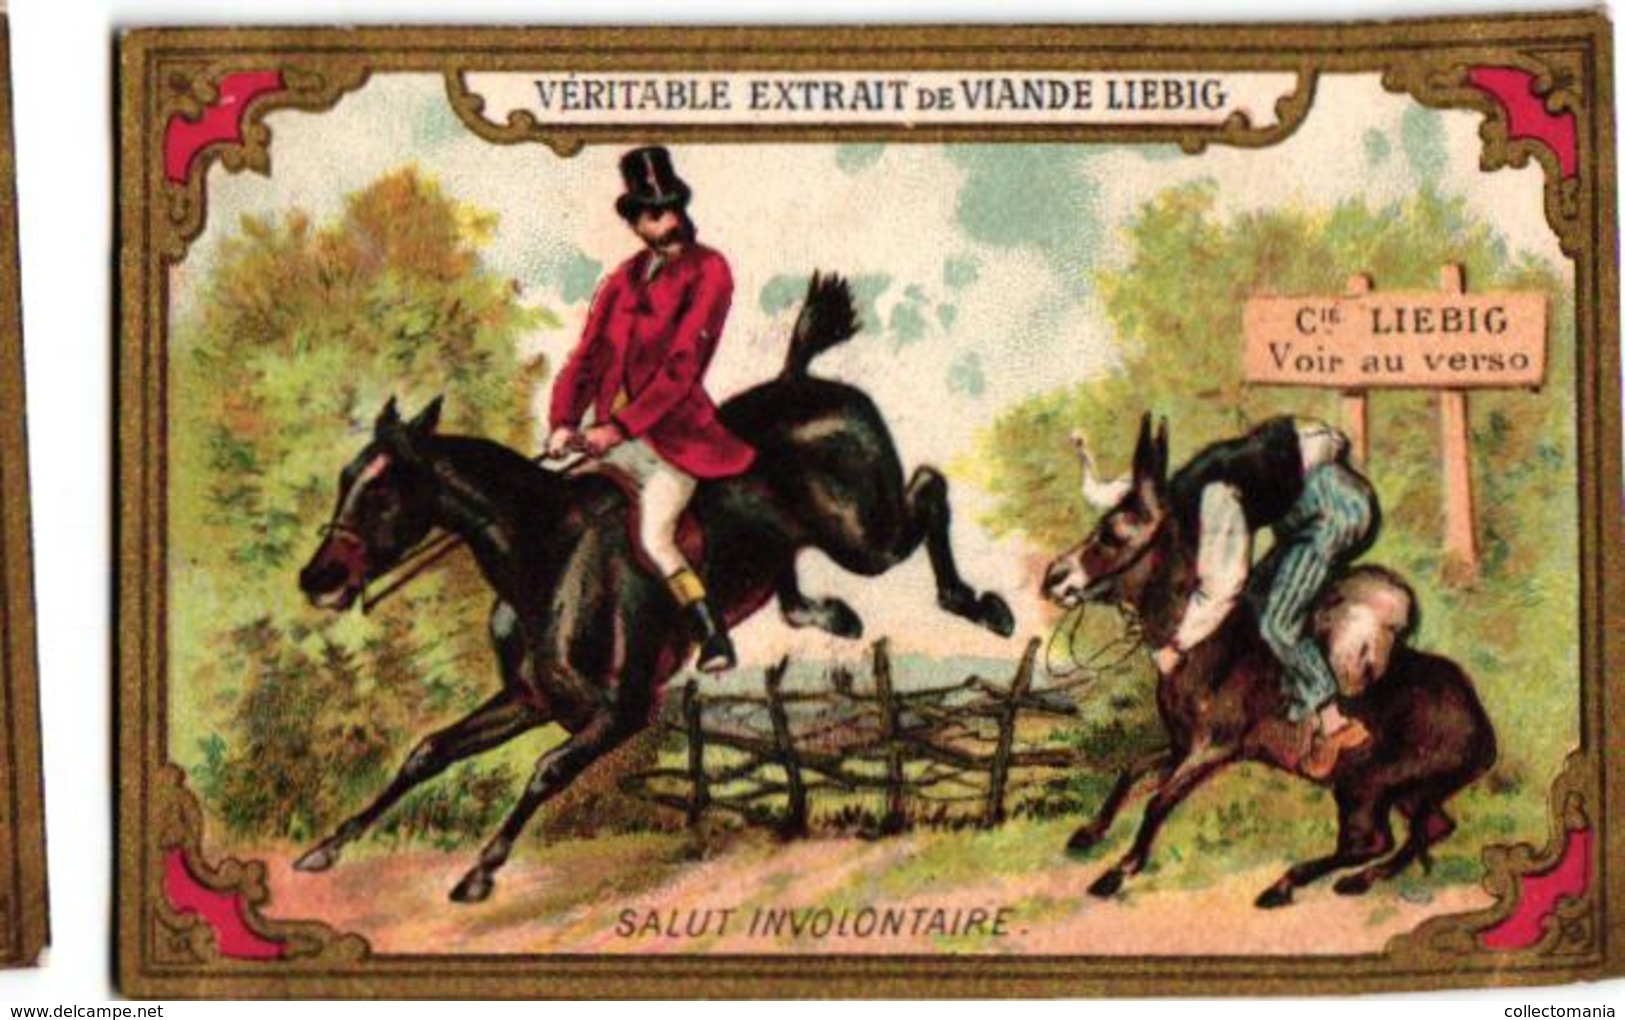 0169 poor horsemanship, Cavaliers de dimanche c1886 Liebig 169 set complete 6 chromo litho French edition